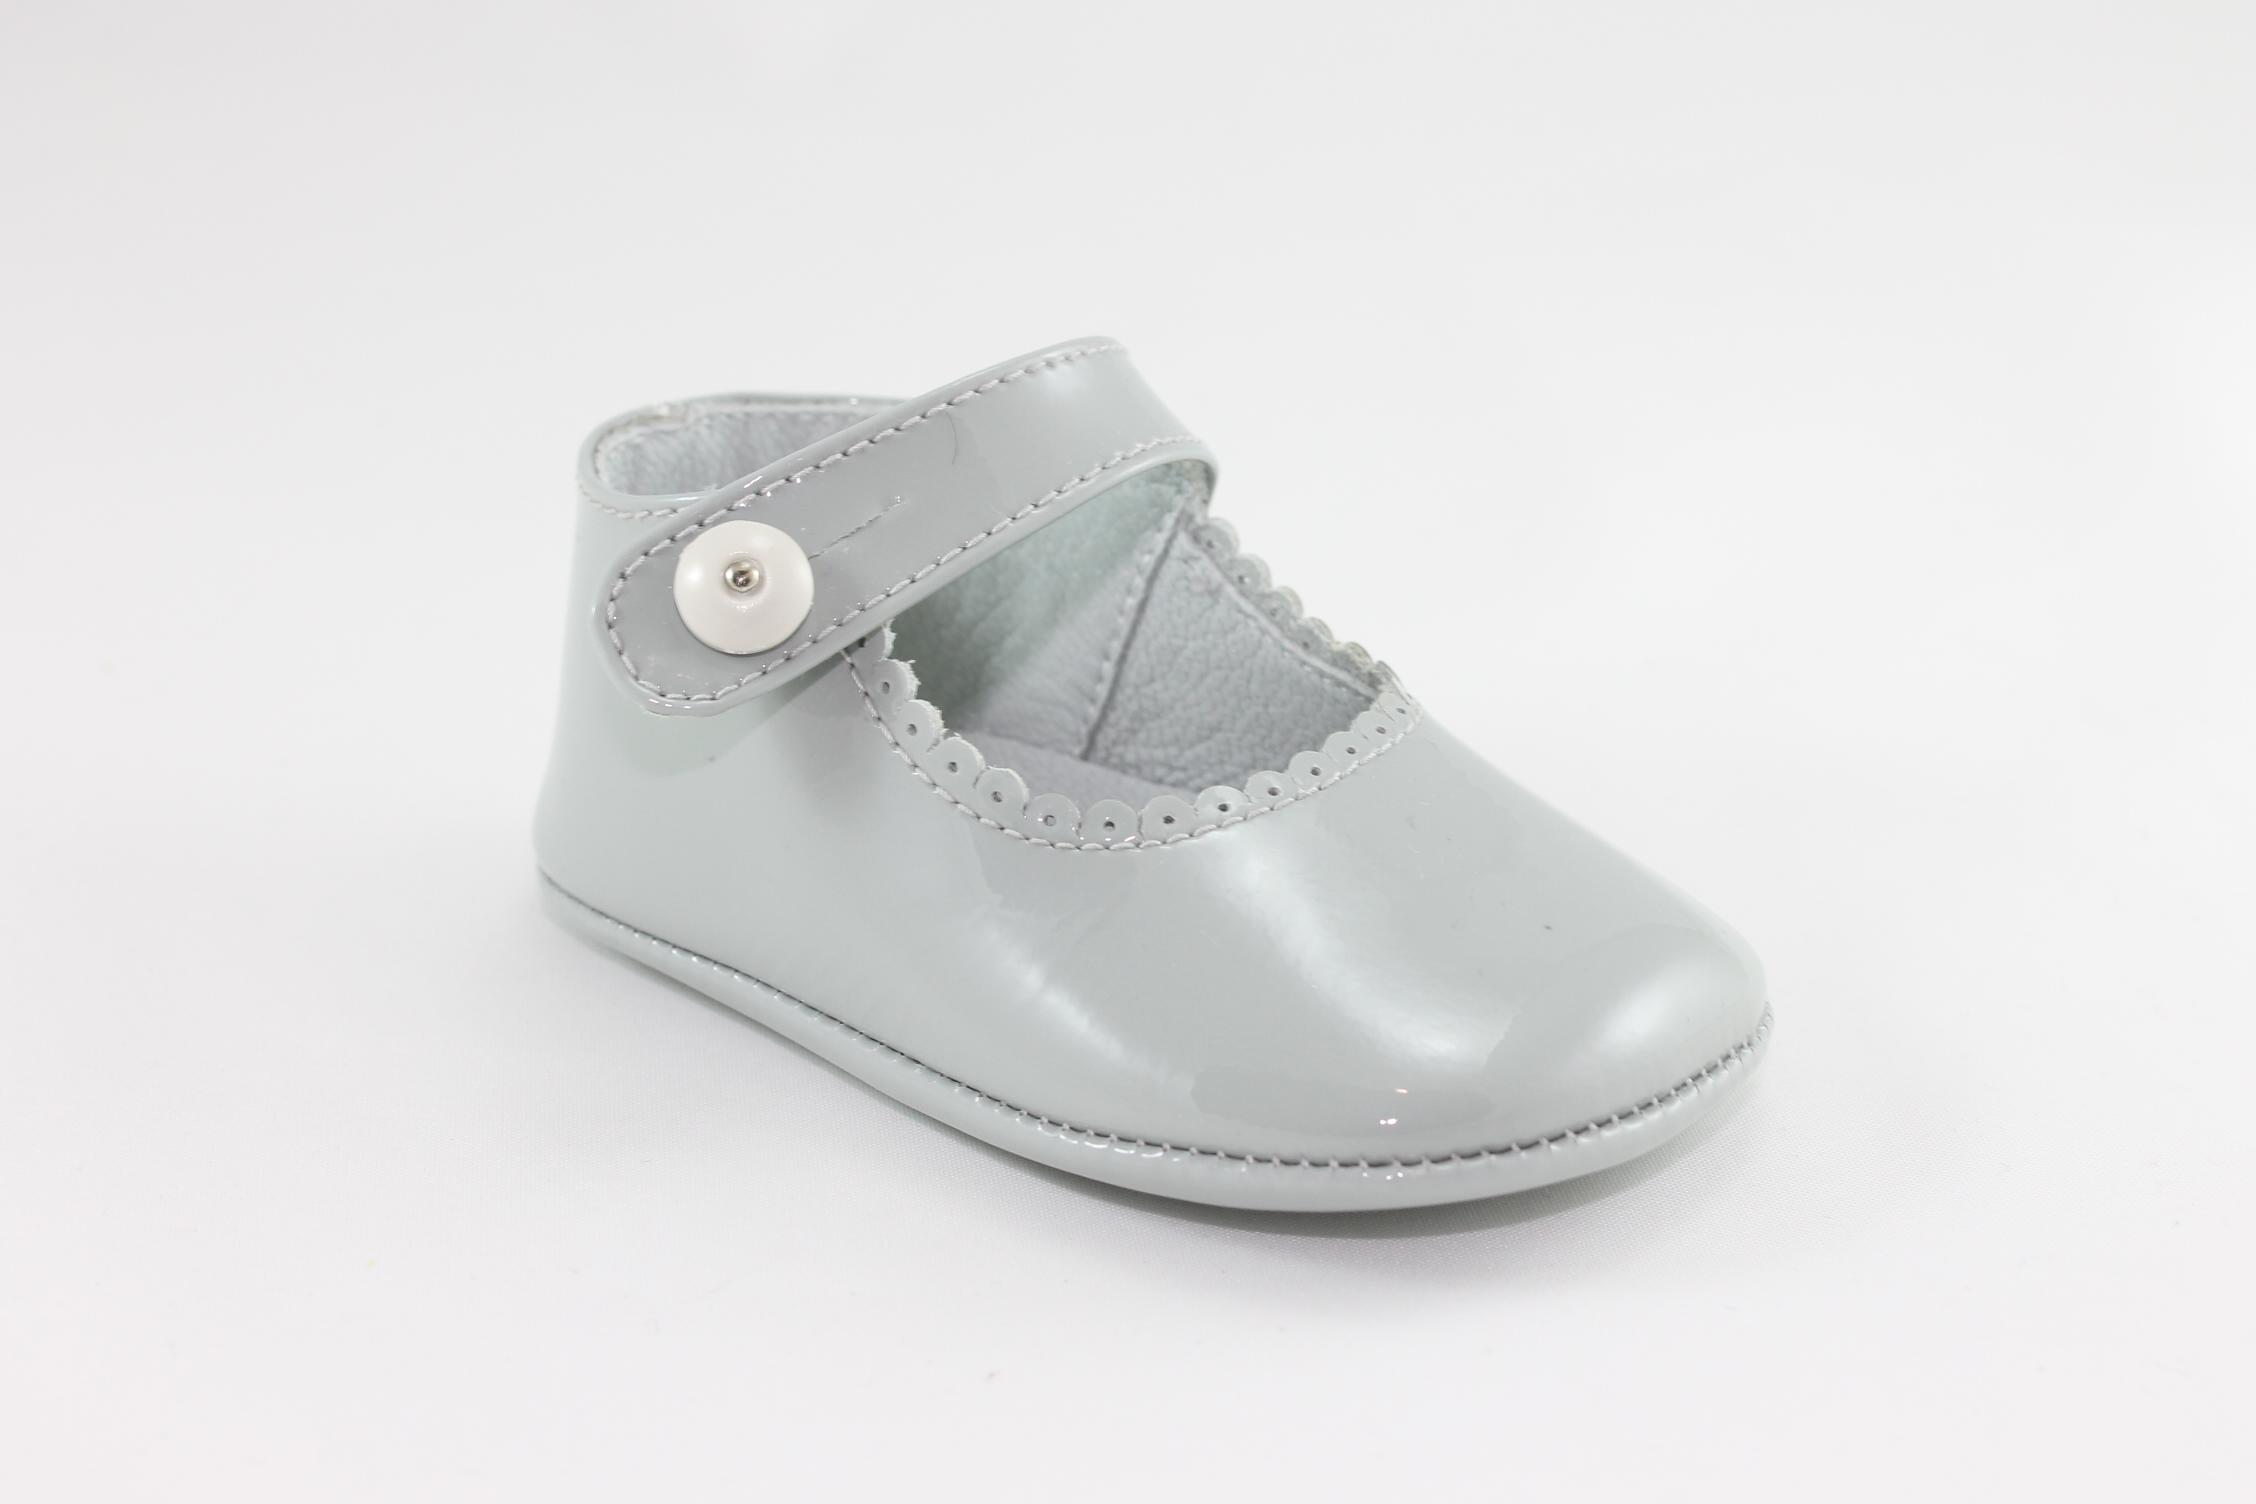 Foto Zapato bebé canastillas grises (Canastillas grises) foto 750443